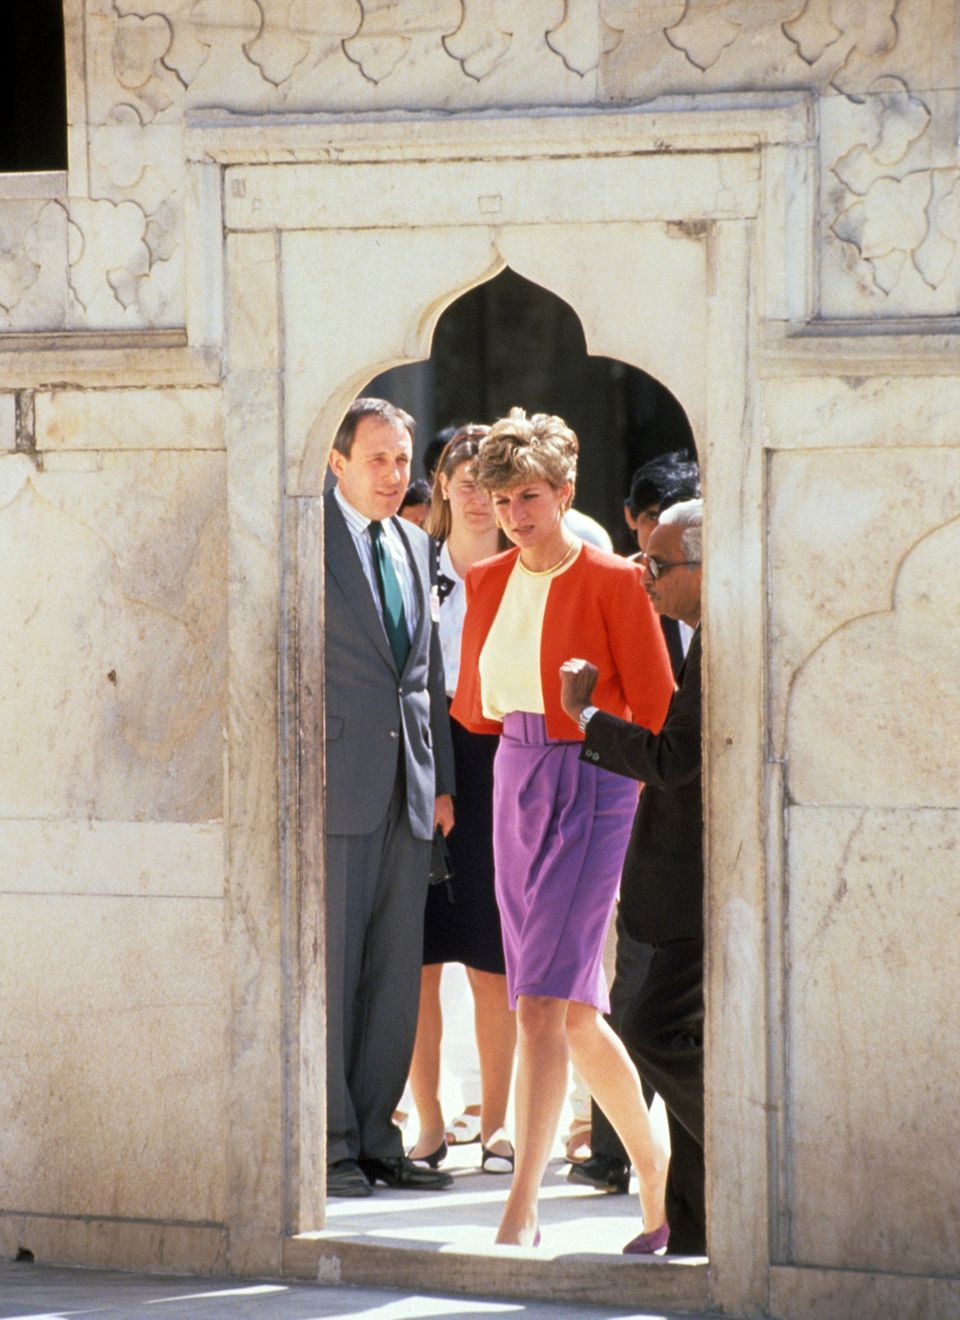 Im Jahr 1992 besuchte Prinzessin Diana auf einer Indienreise das berühmte Mausoleum "Taj Mahal". Für viele Verehrer war Lady Di eine Fashion-Ikone, die eine gewisse Melancholie umgab.